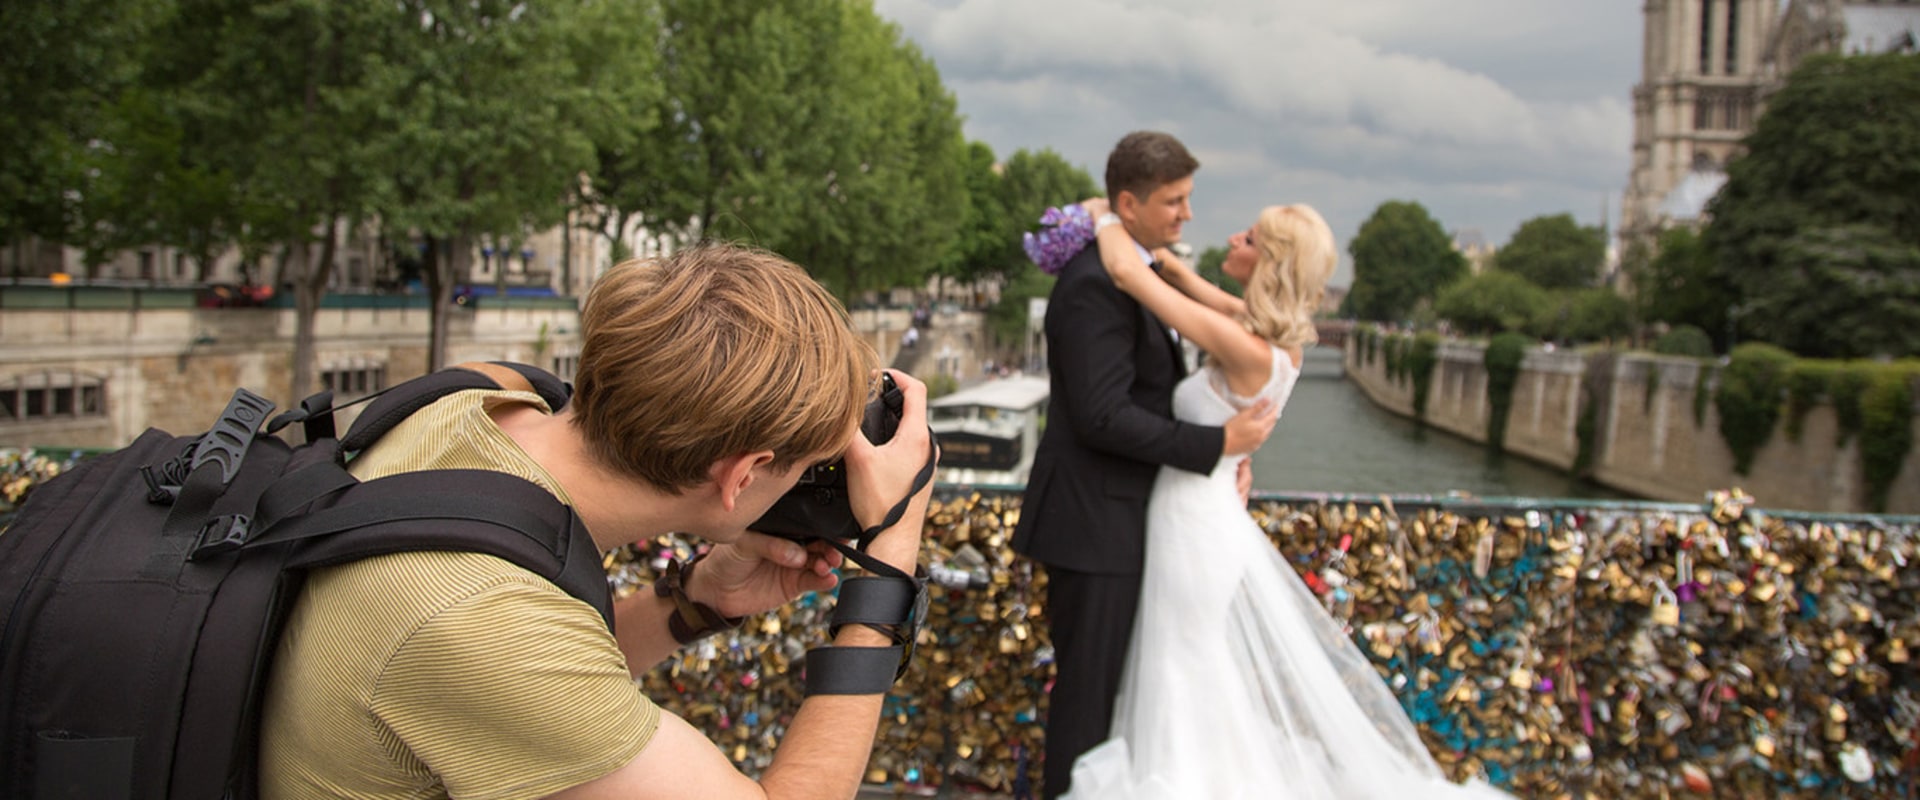 Tenga en cuenta su presupuesto al elegir un fotógrafo de bodas